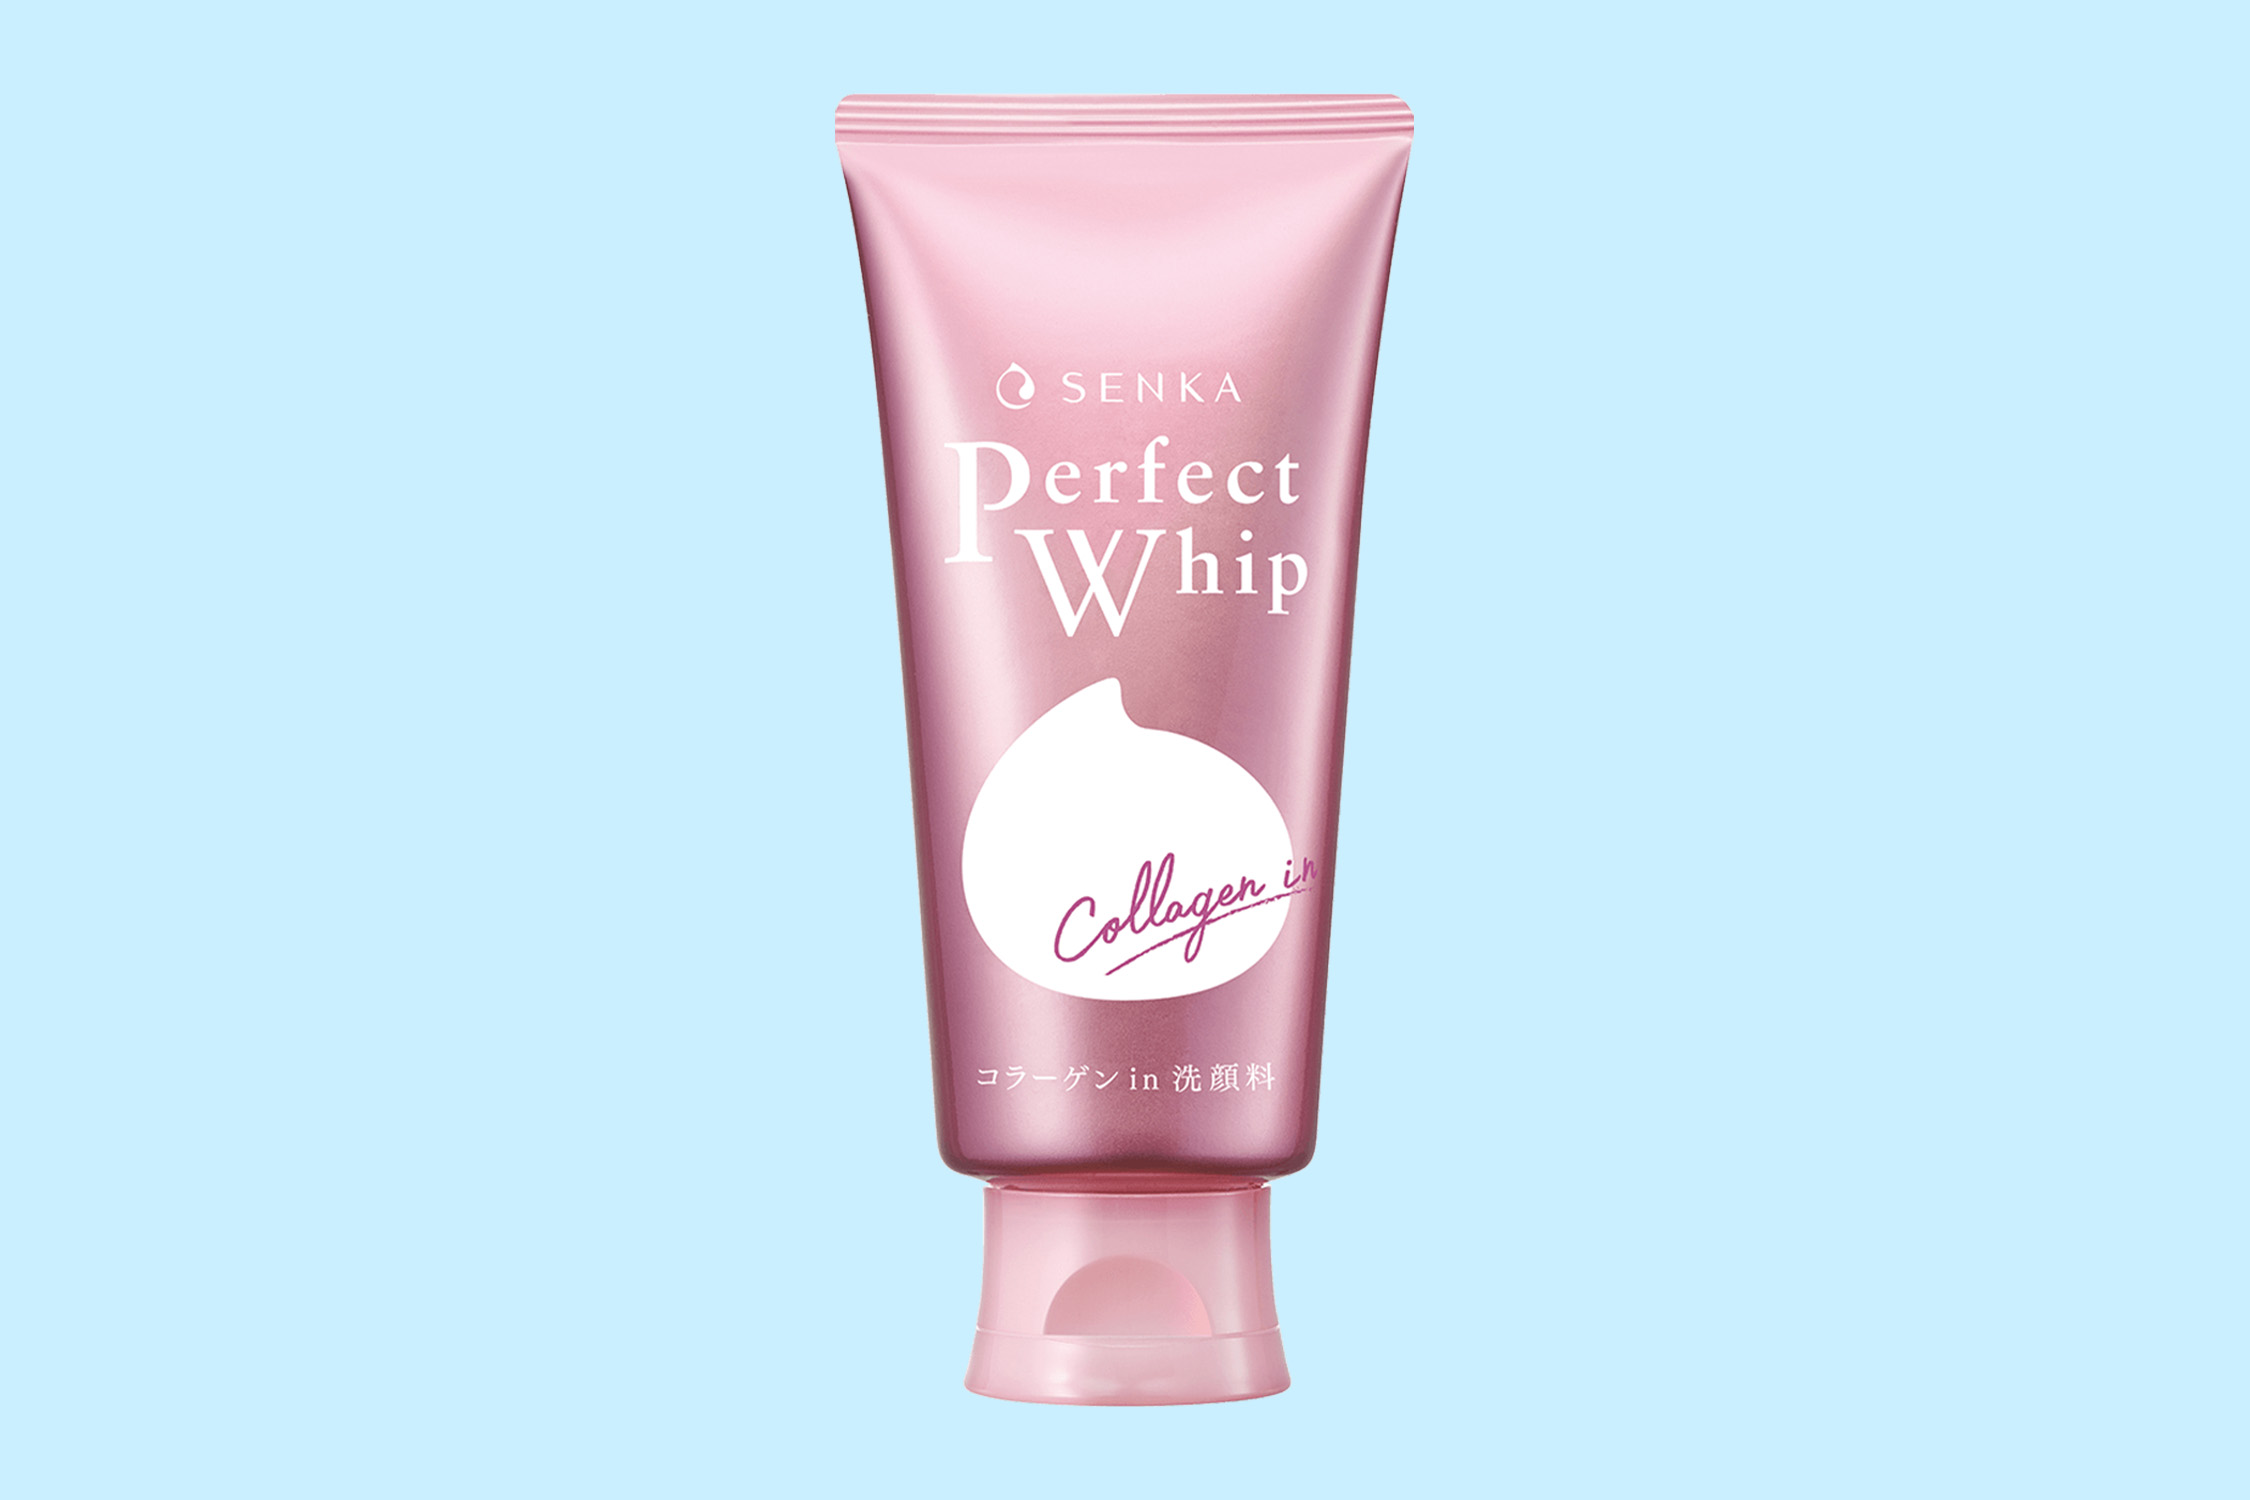 Facial wash untuk kulit kering Senka Perfect Whip Collagen In